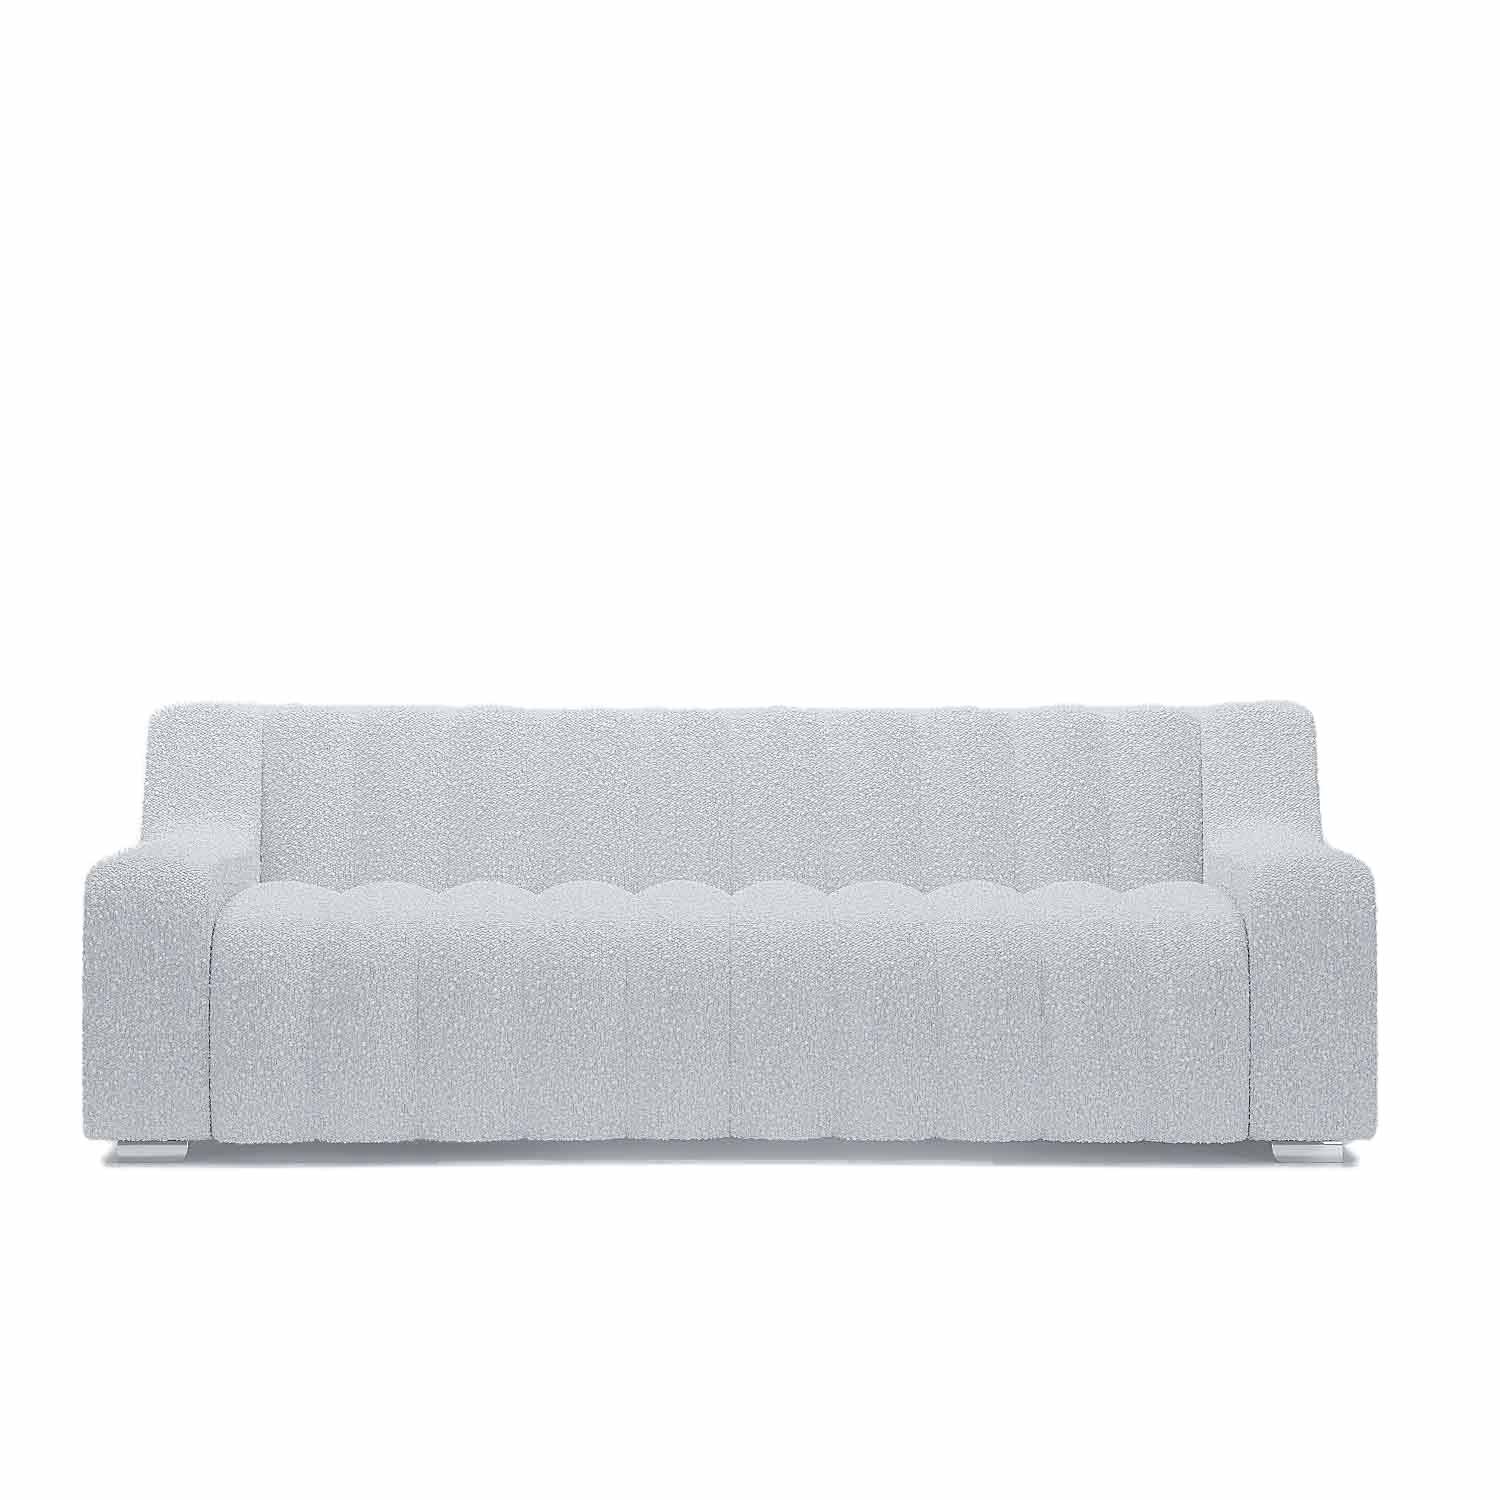 Canapé droit 3 places Blanc Tissu Moderne Confort Promotion